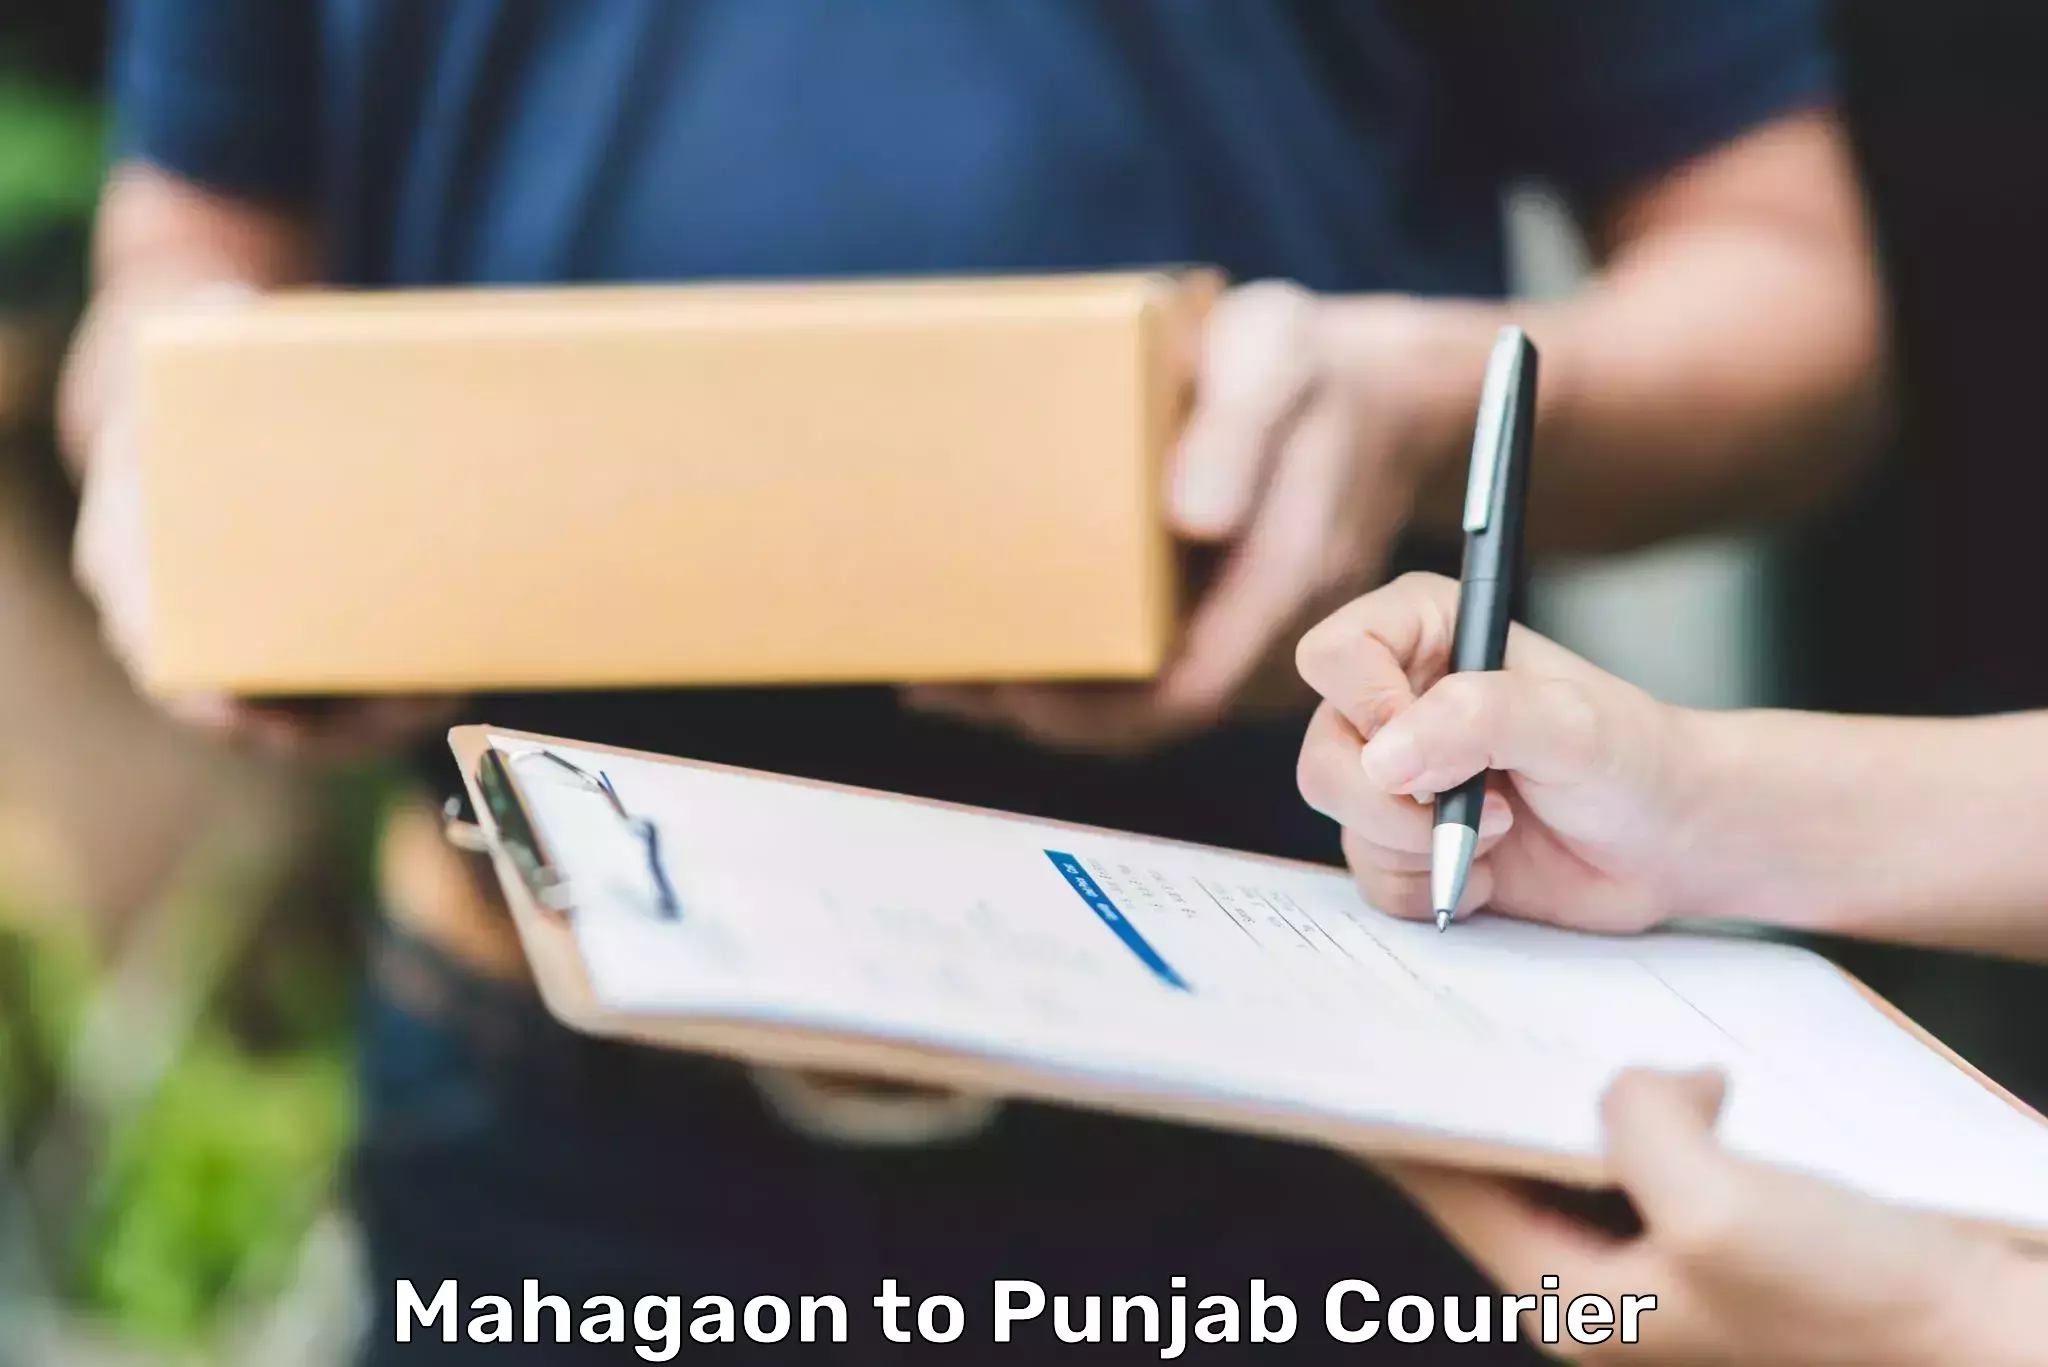 Holiday shipping services Mahagaon to Punjab